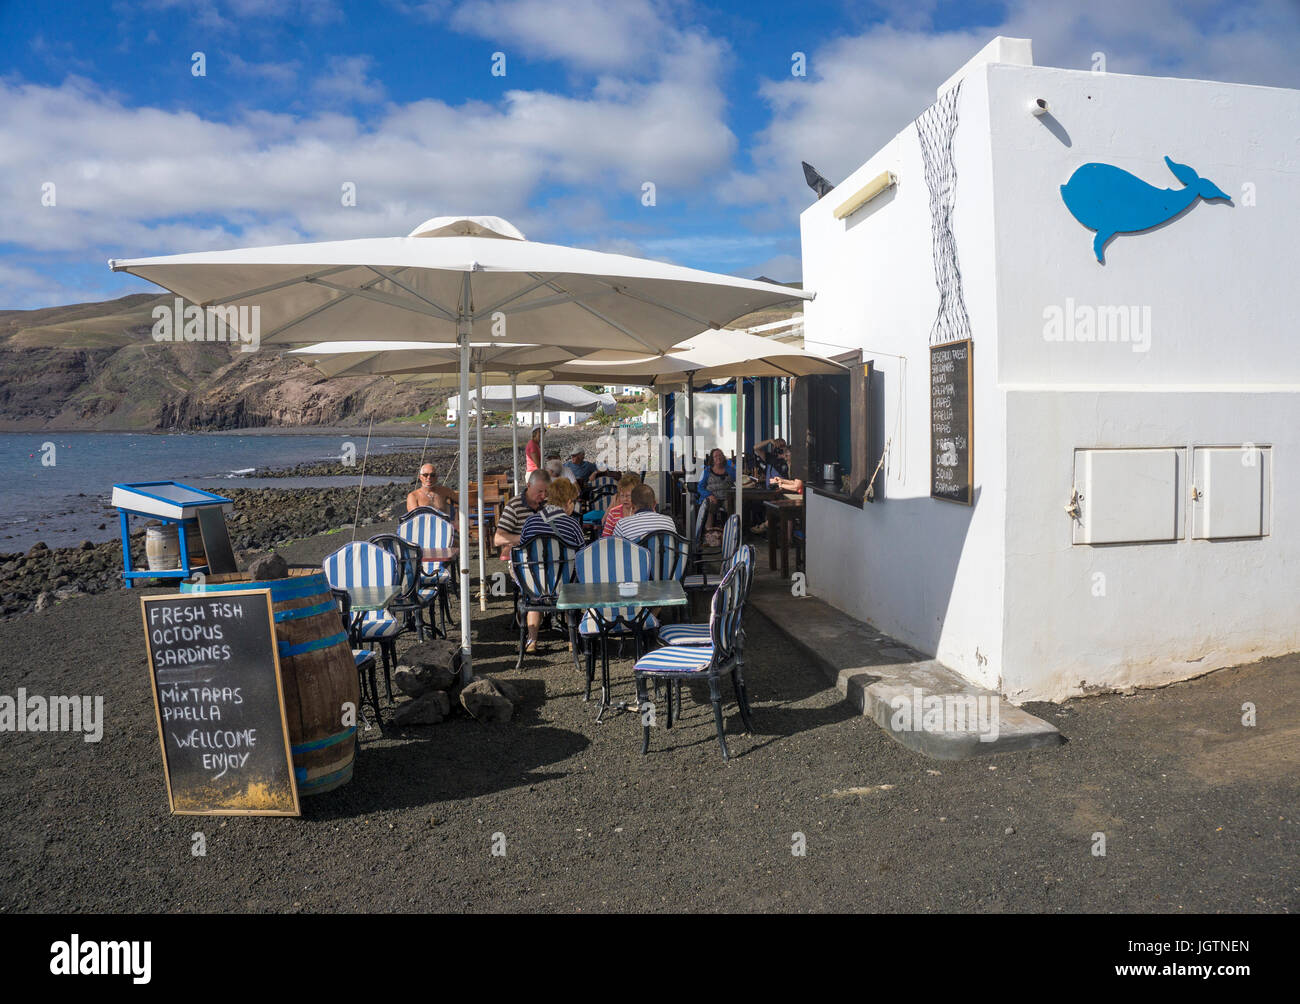 Fischrestaurant am Strand des Fischerdorfes Playa Quemada, Insel Lanzarote, Kanarische Inseln, Spanien, Europa Stockfoto